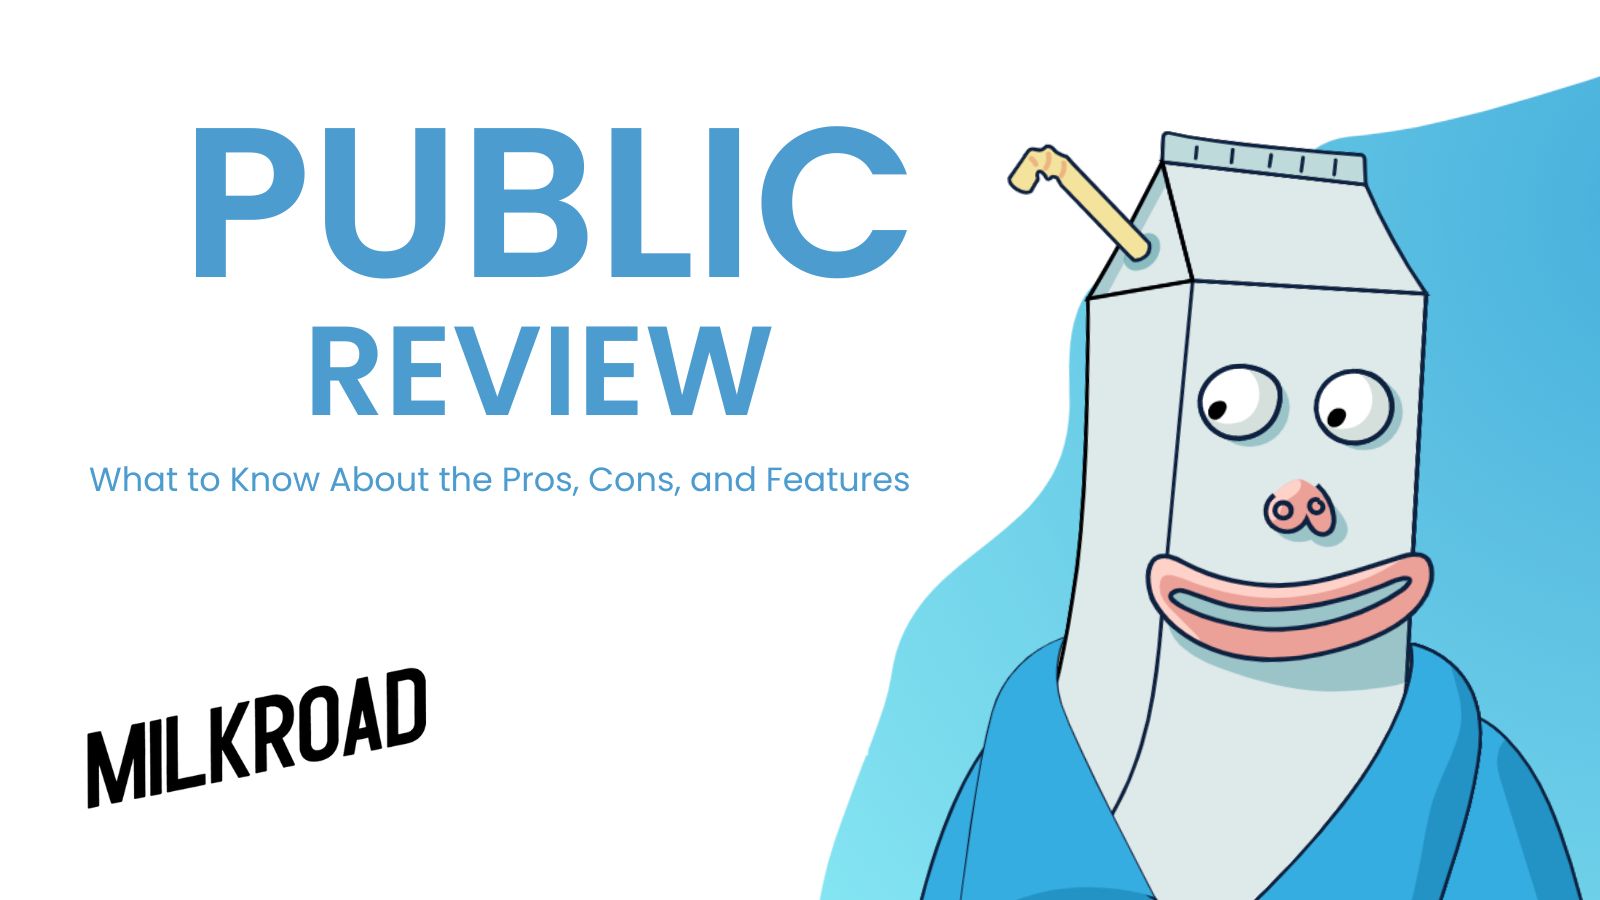 Public Review